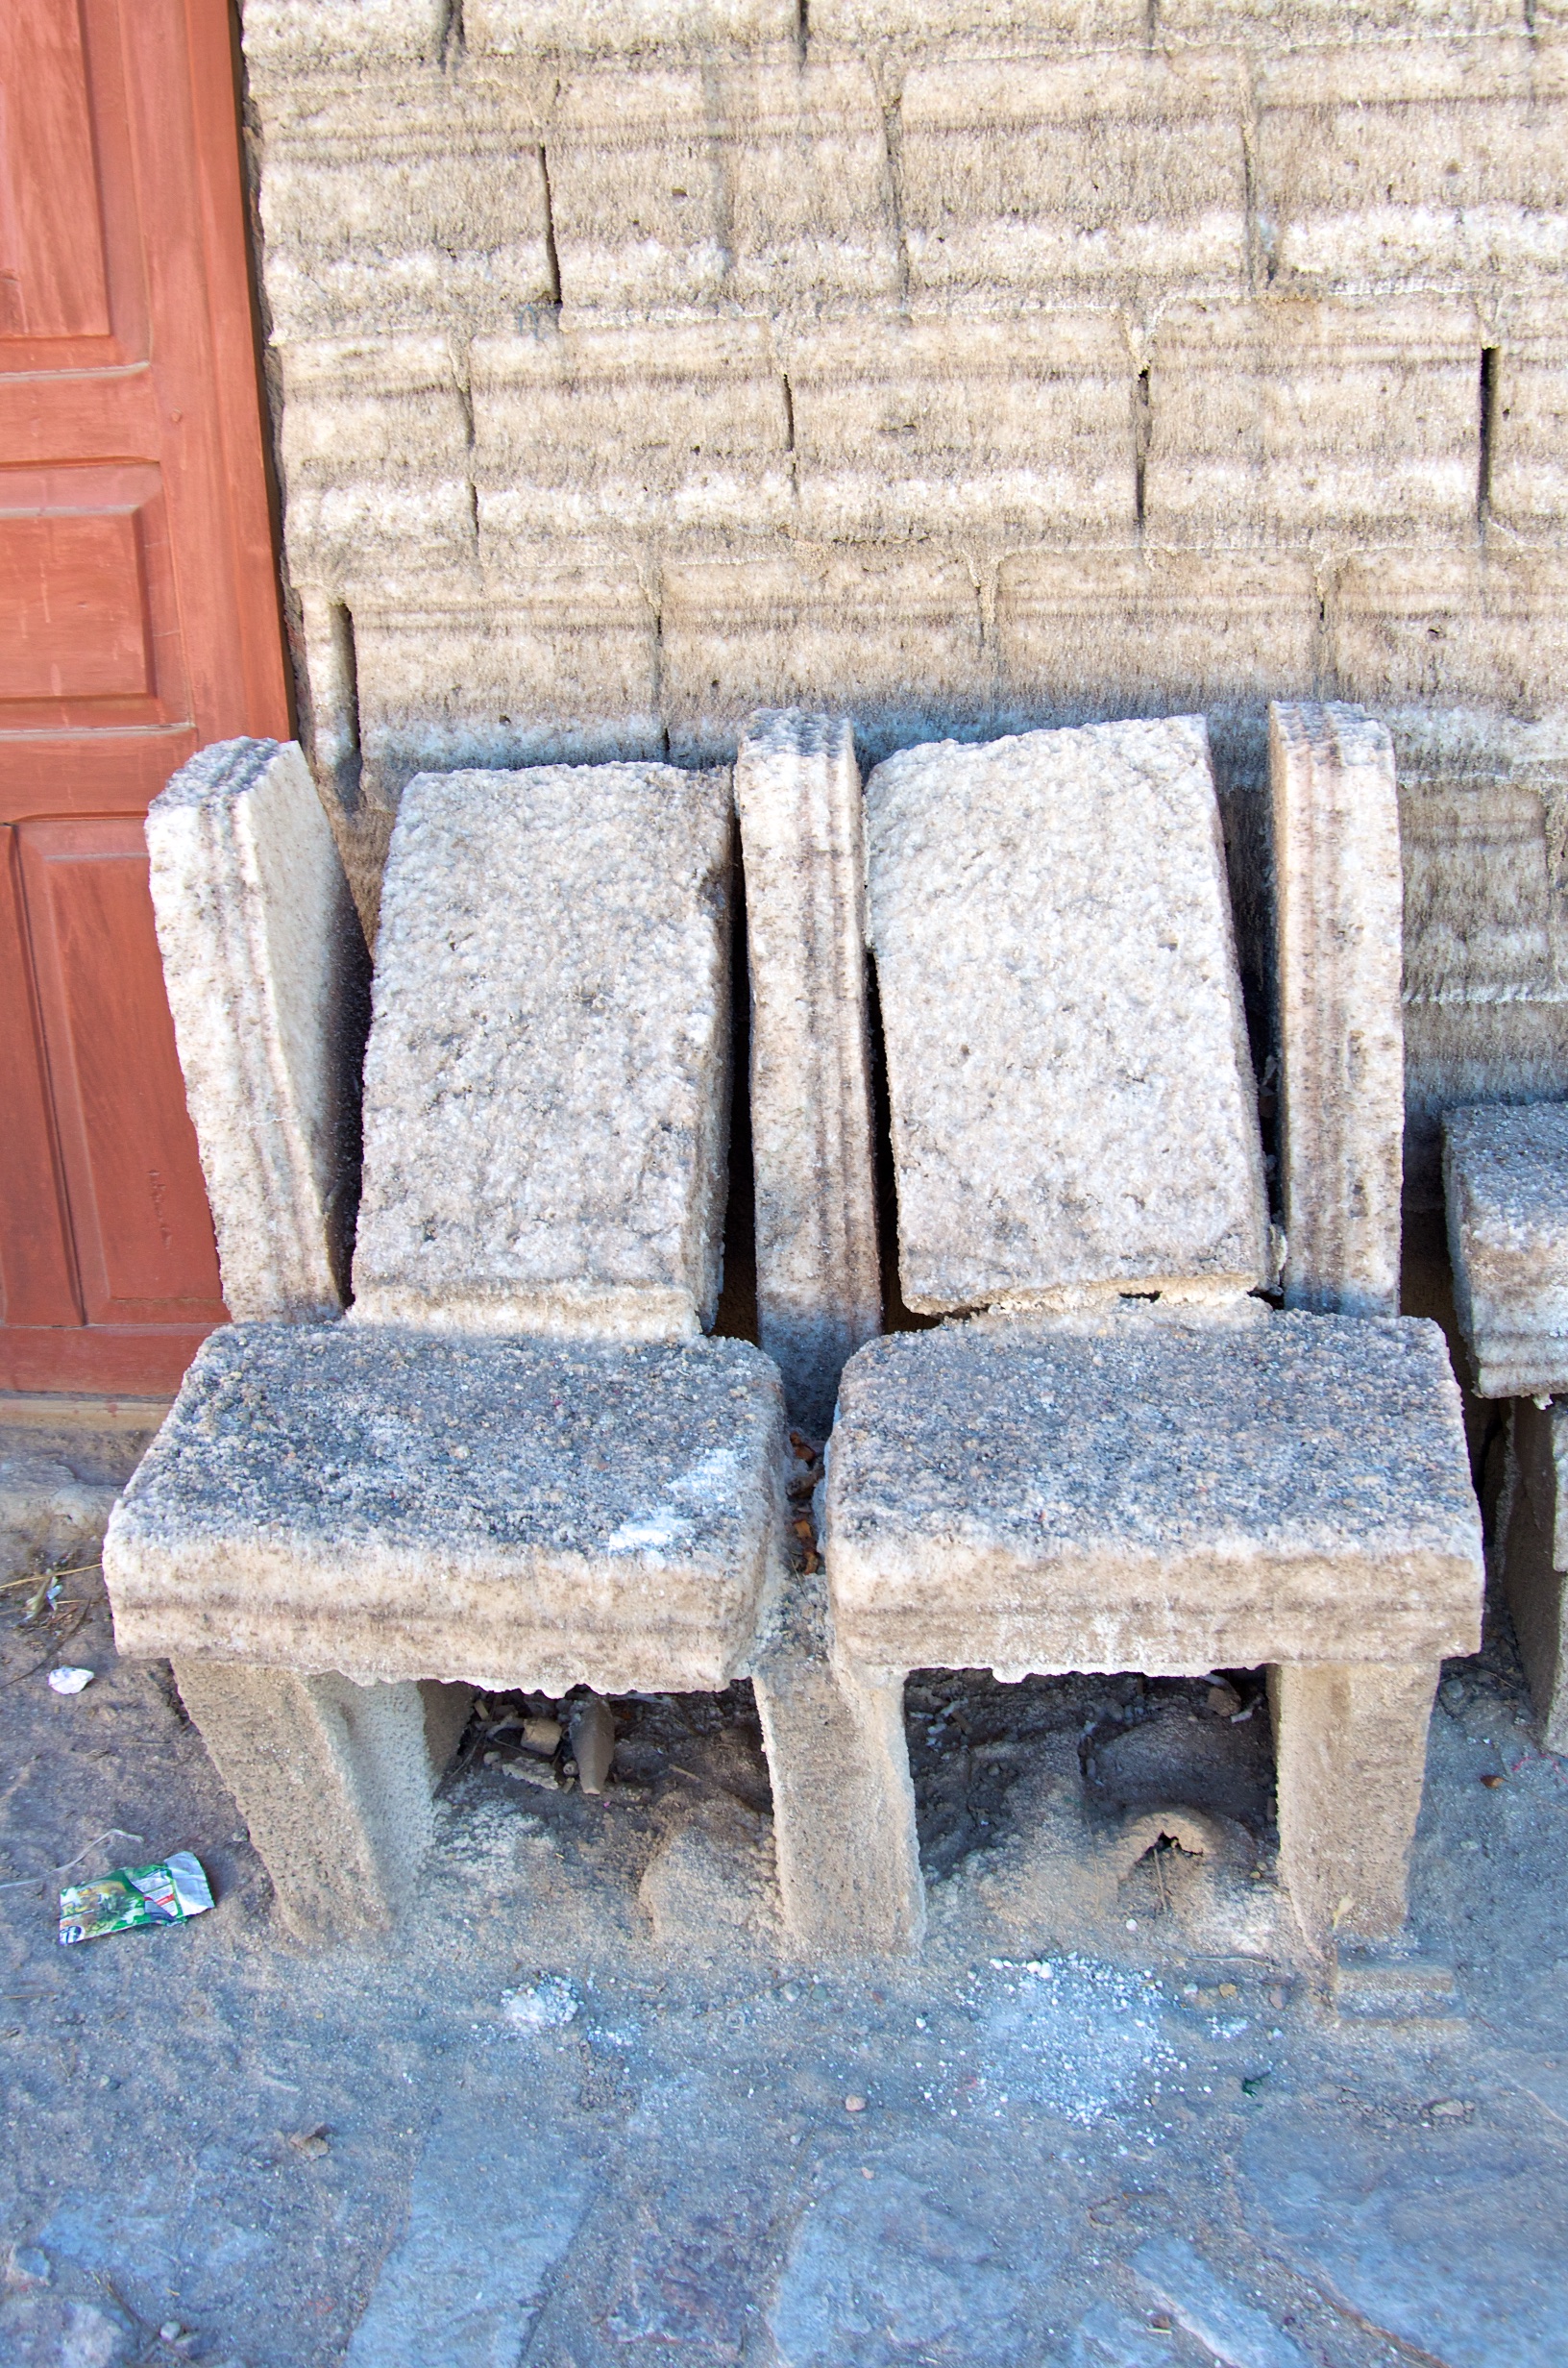  Salt chairs, village near Uyuni, Salar de Uyuni, Bolivia 